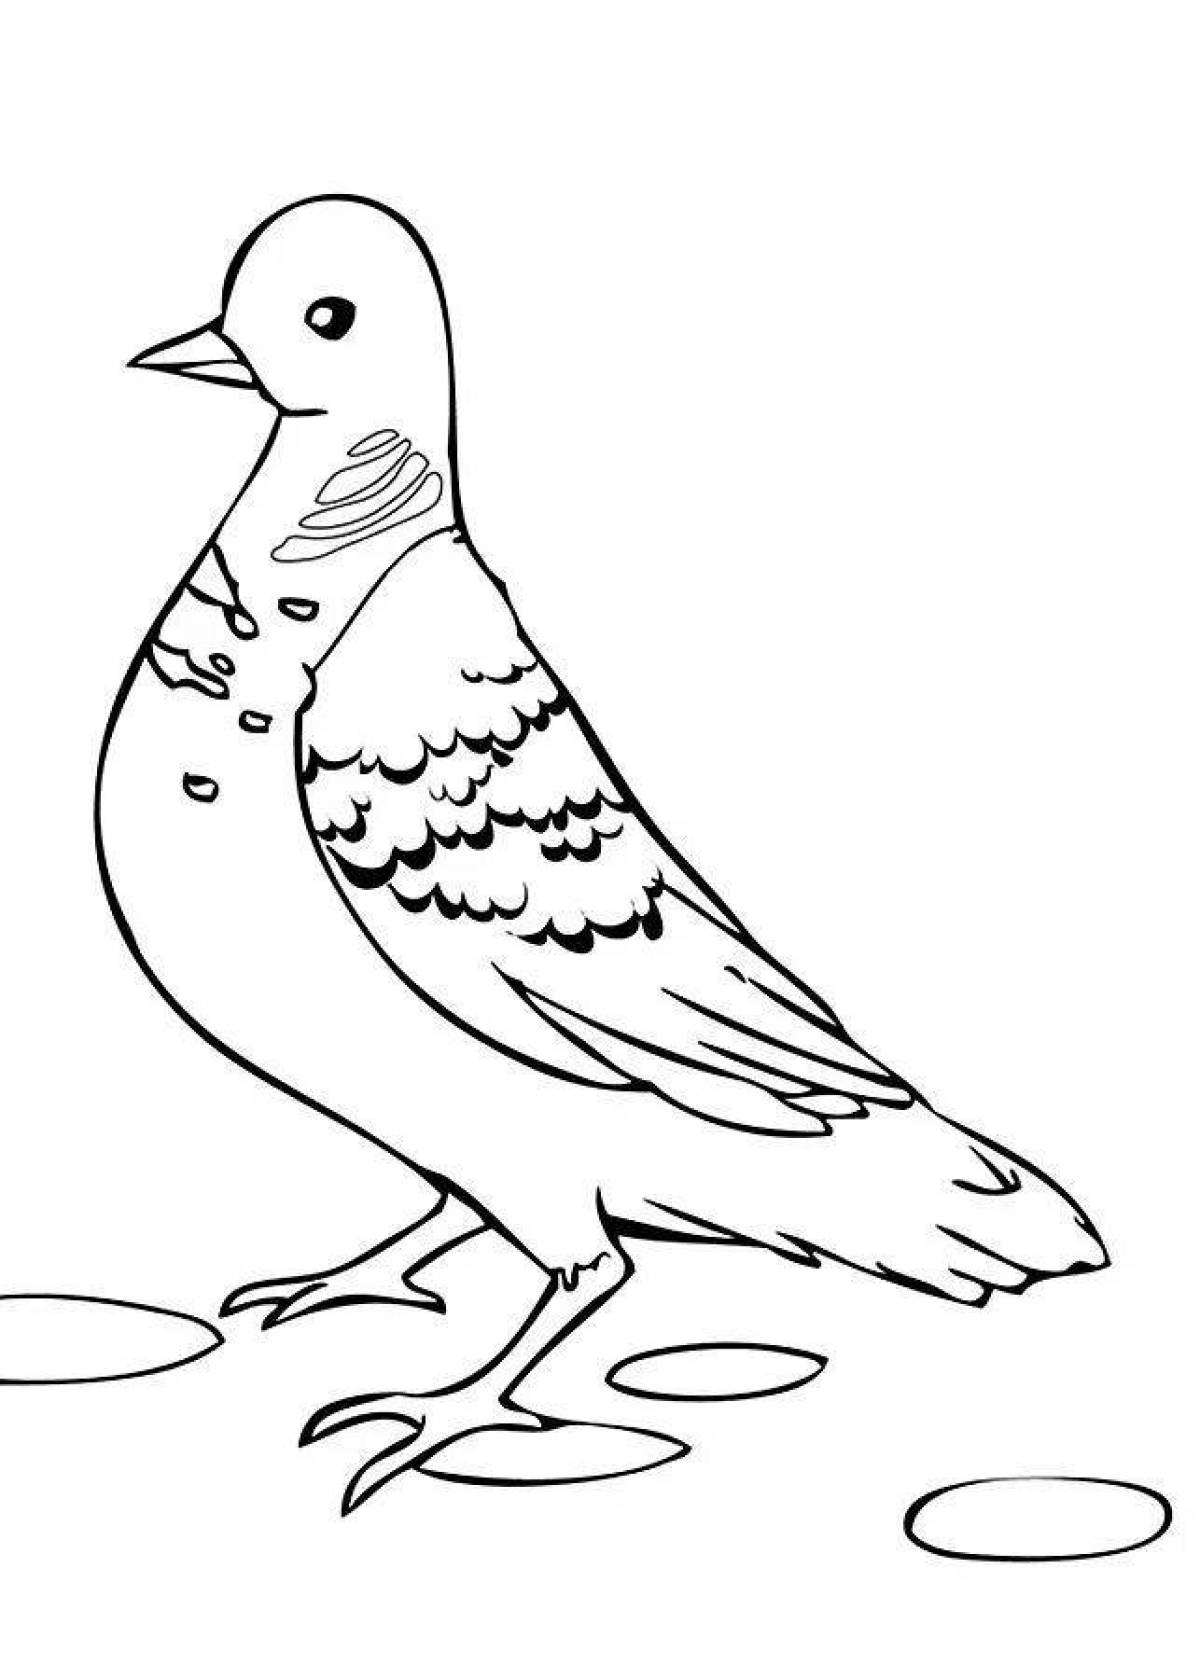 Colouring sun dove